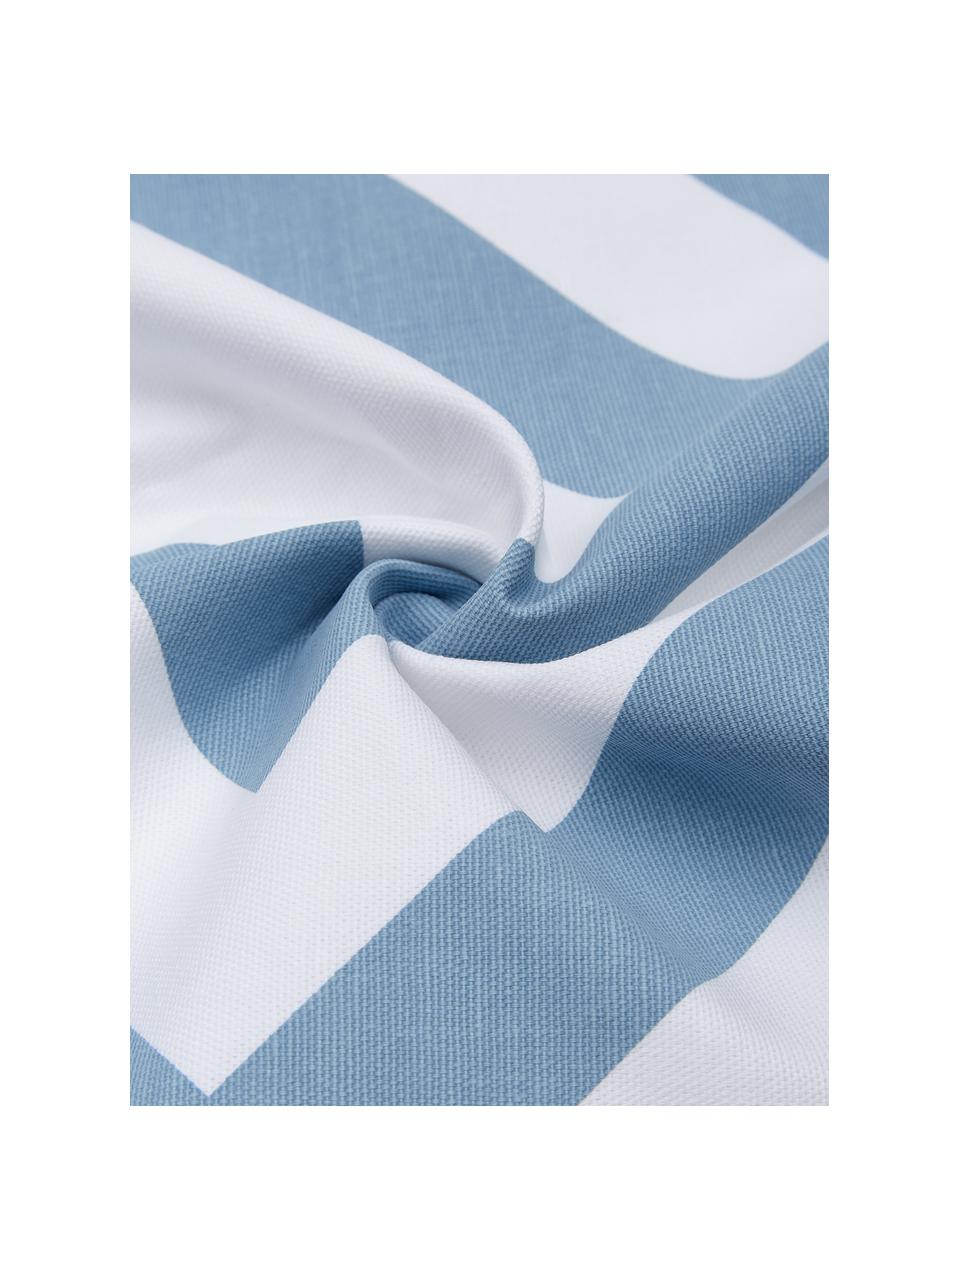 Federa arredo con motivo grafico azzurro/bianco Sera, 100% cotone, Bianco, azzurro, Larg. 45 x Lung. 45 cm